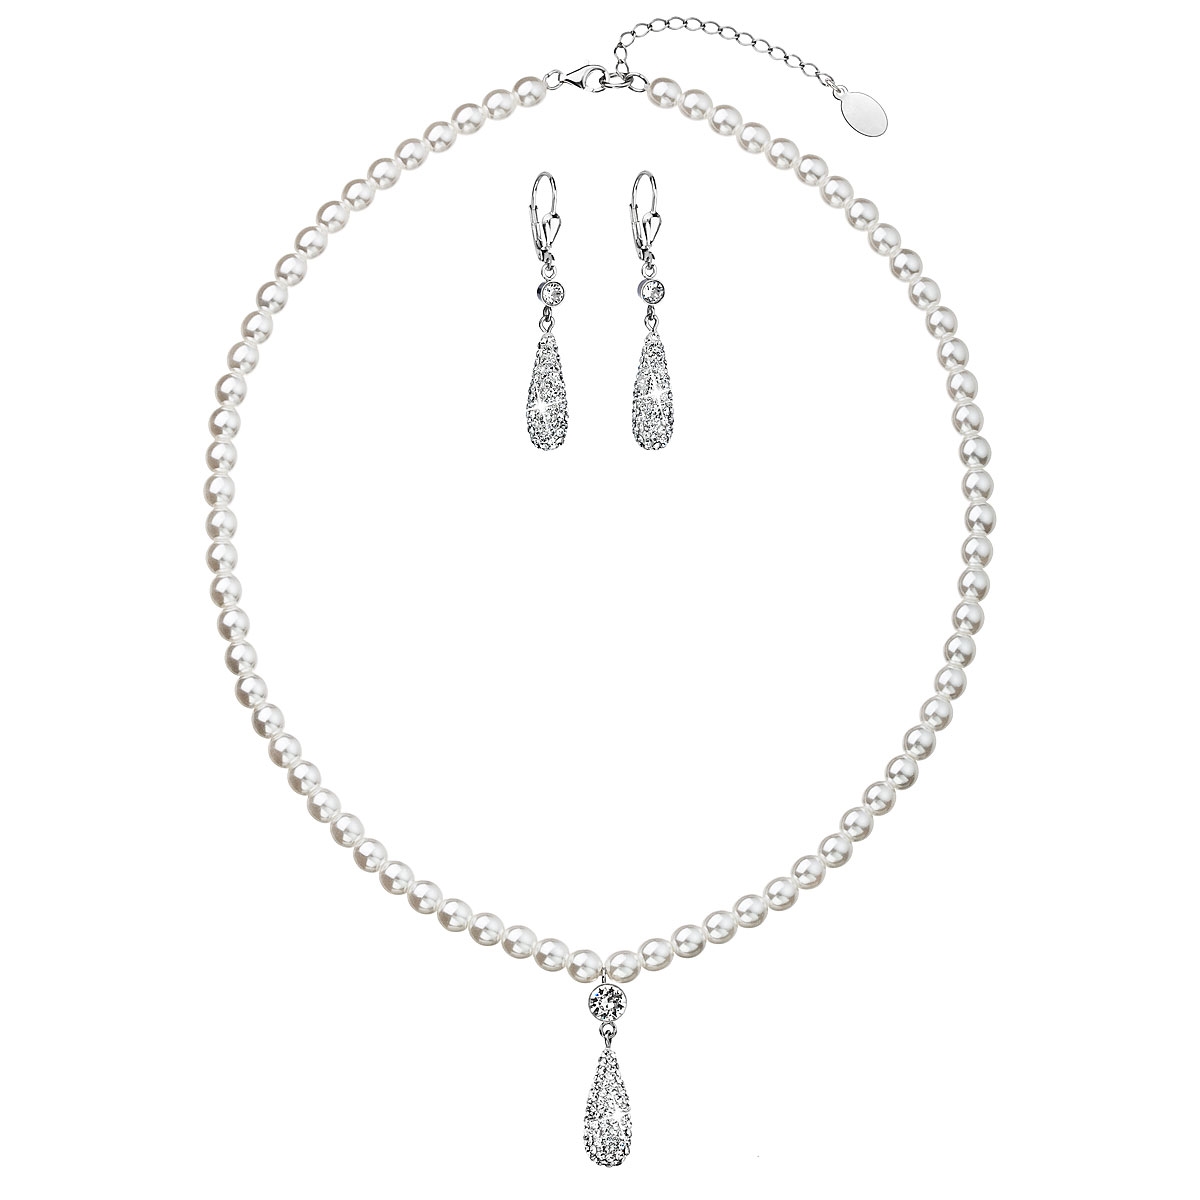 Sada šperkov sa perličkami Crystals from Swarovski ®